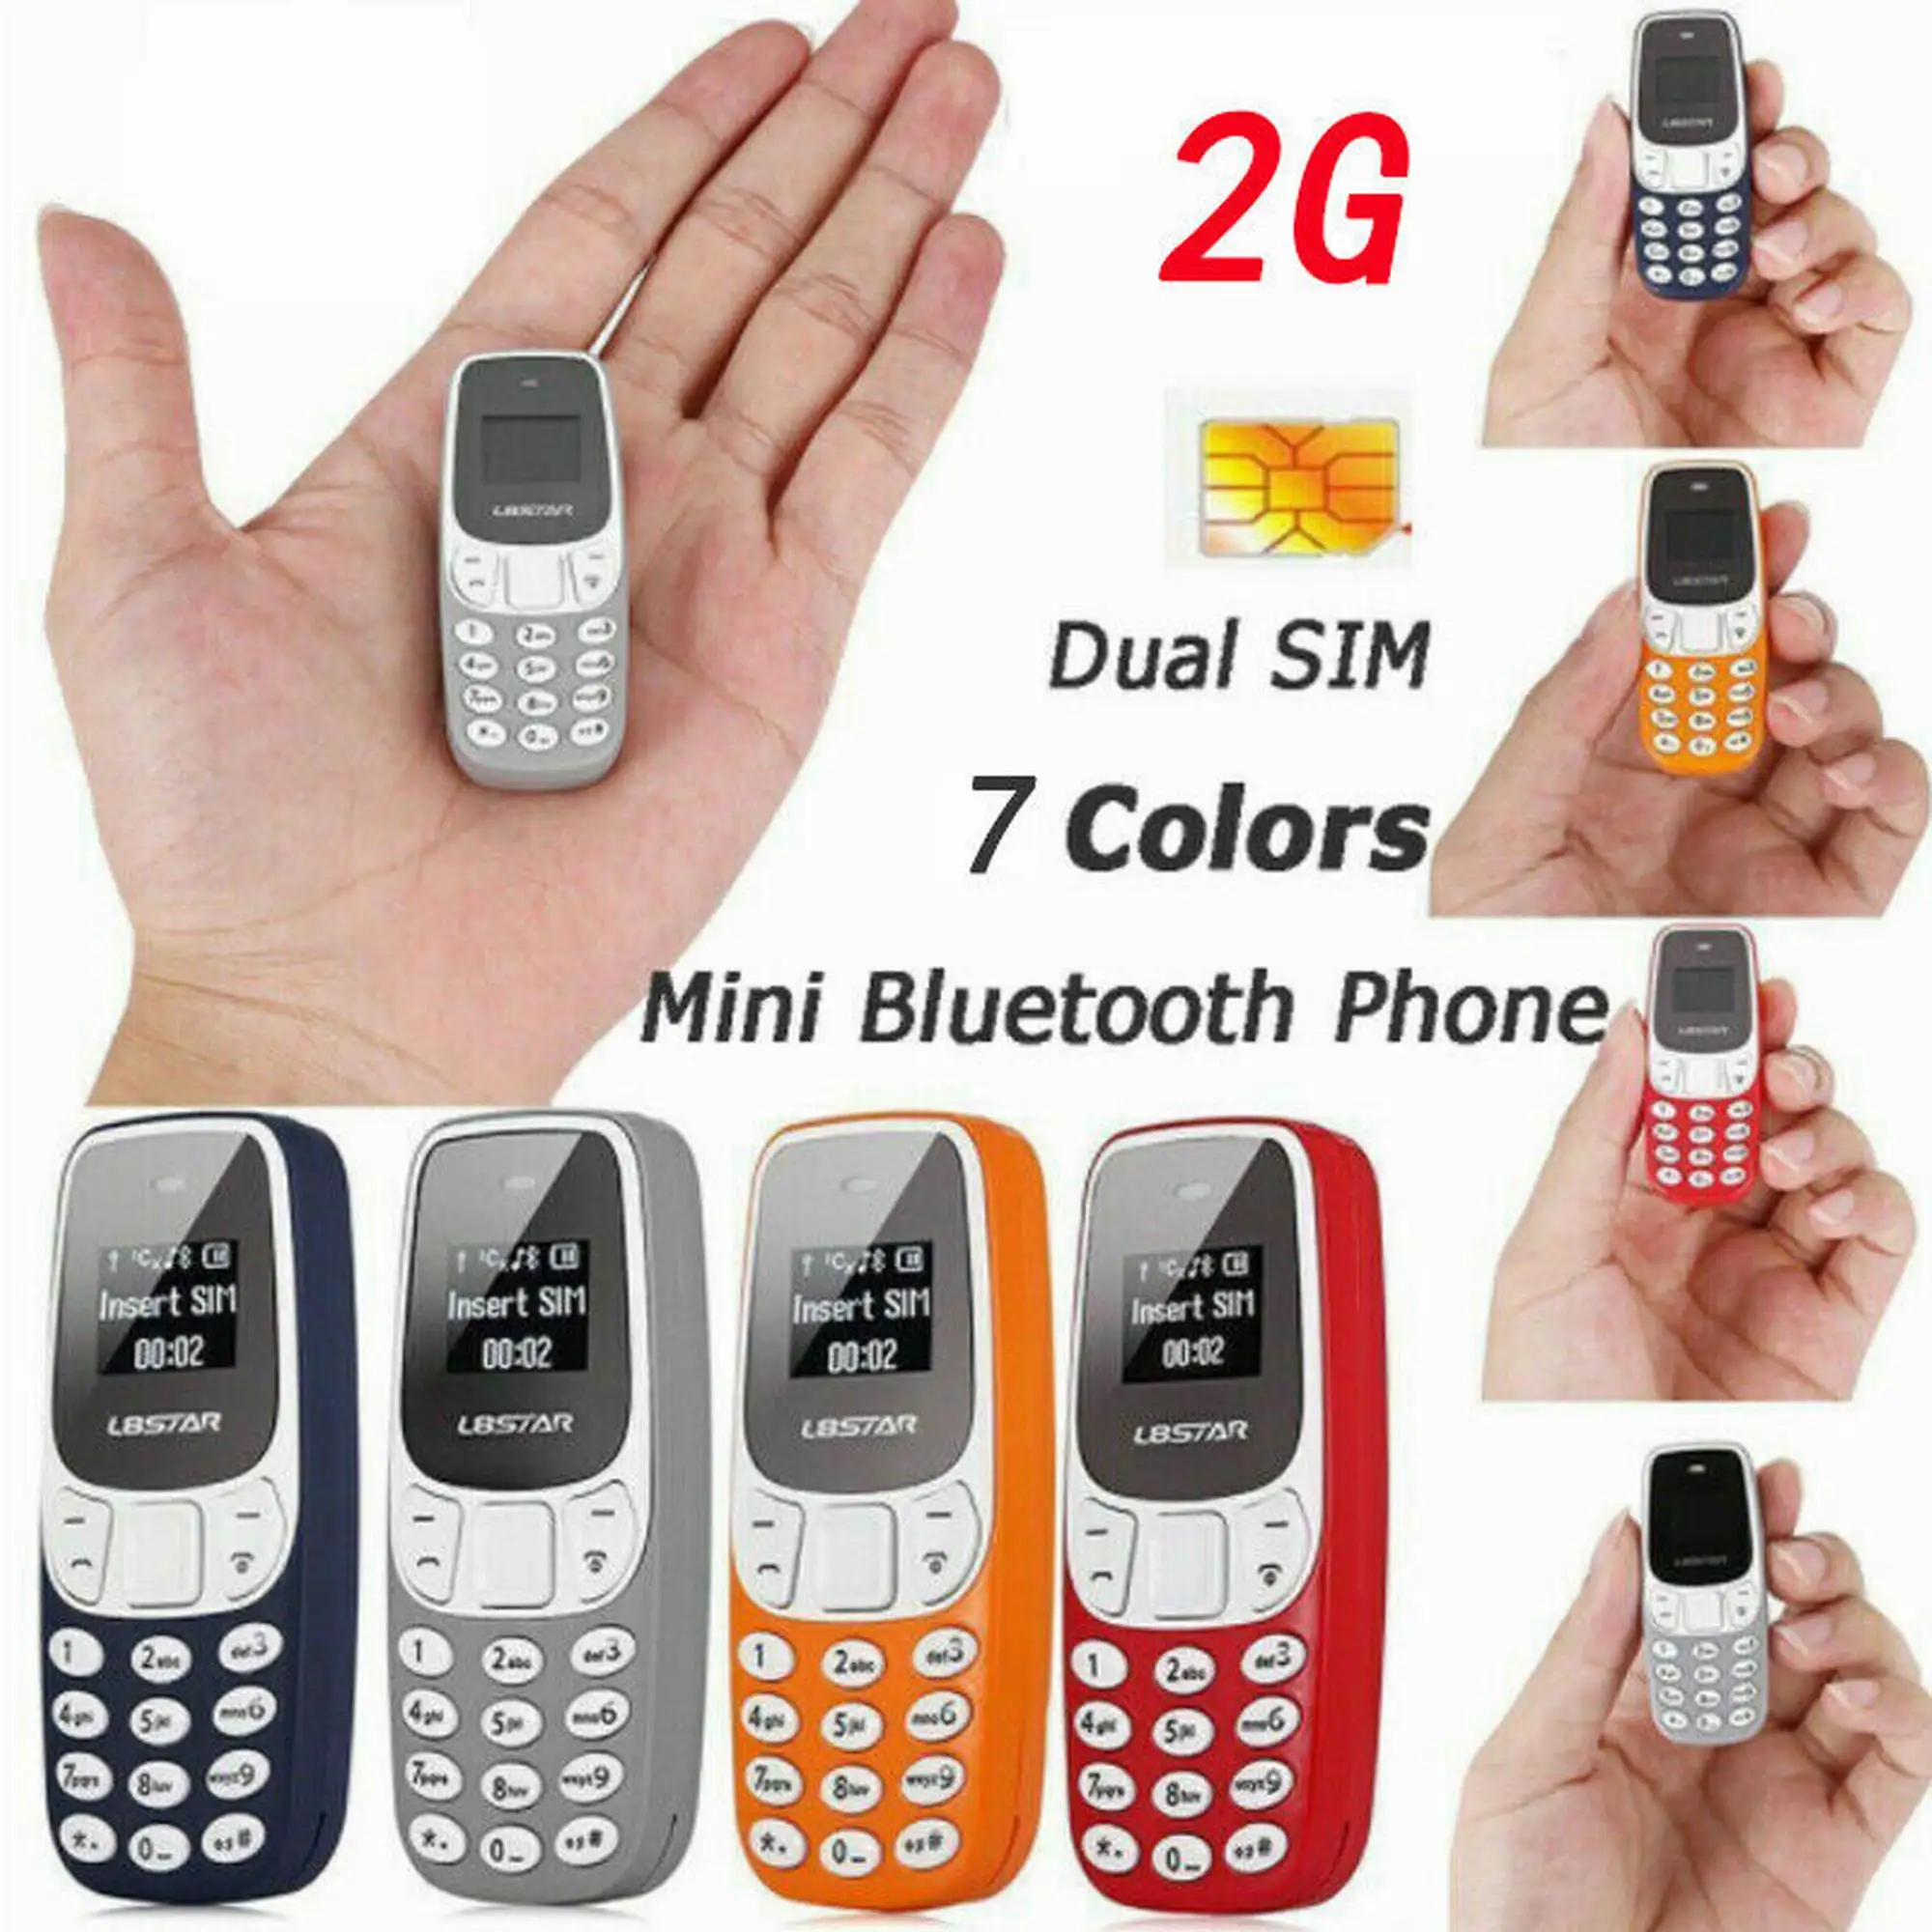 

Самый дешевый товар, горячая Распродажа, мини-телефон Bm10, поддерживает две карты, два режима ожидания для звонков